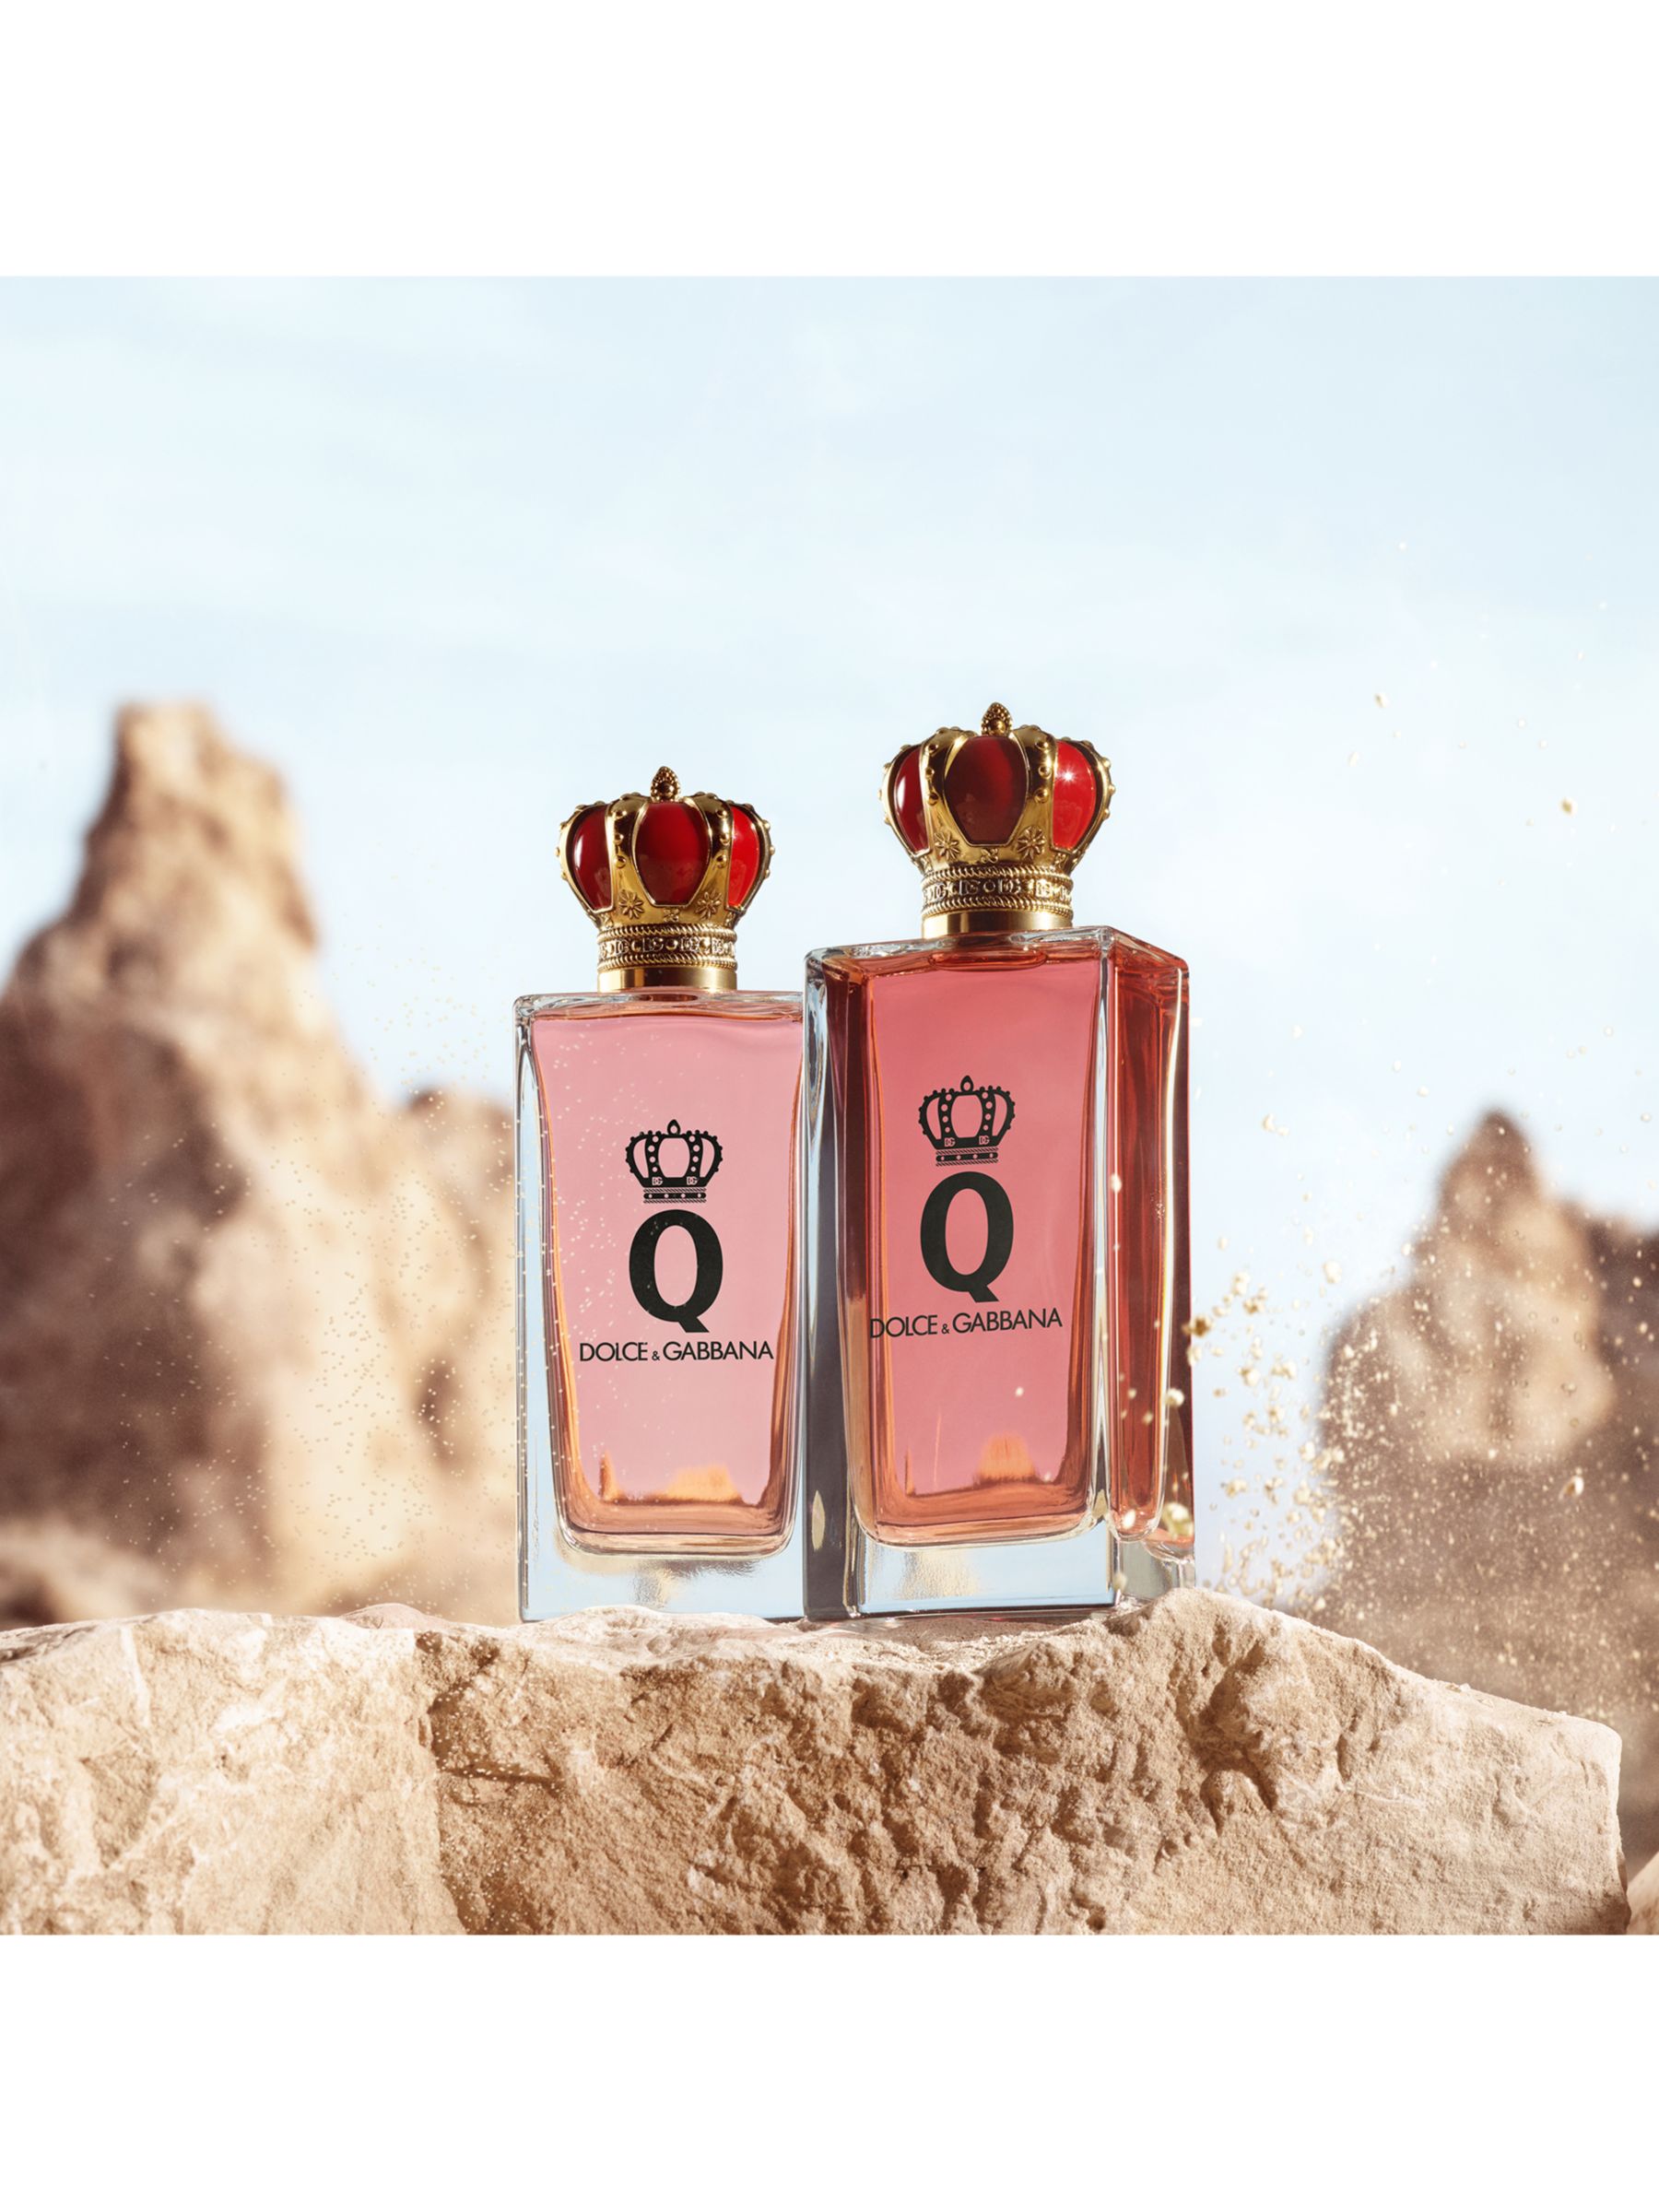 Dolce & Gabbana Q by Dolce & Gabbana Intense Eau de Parfum, 30ml 7